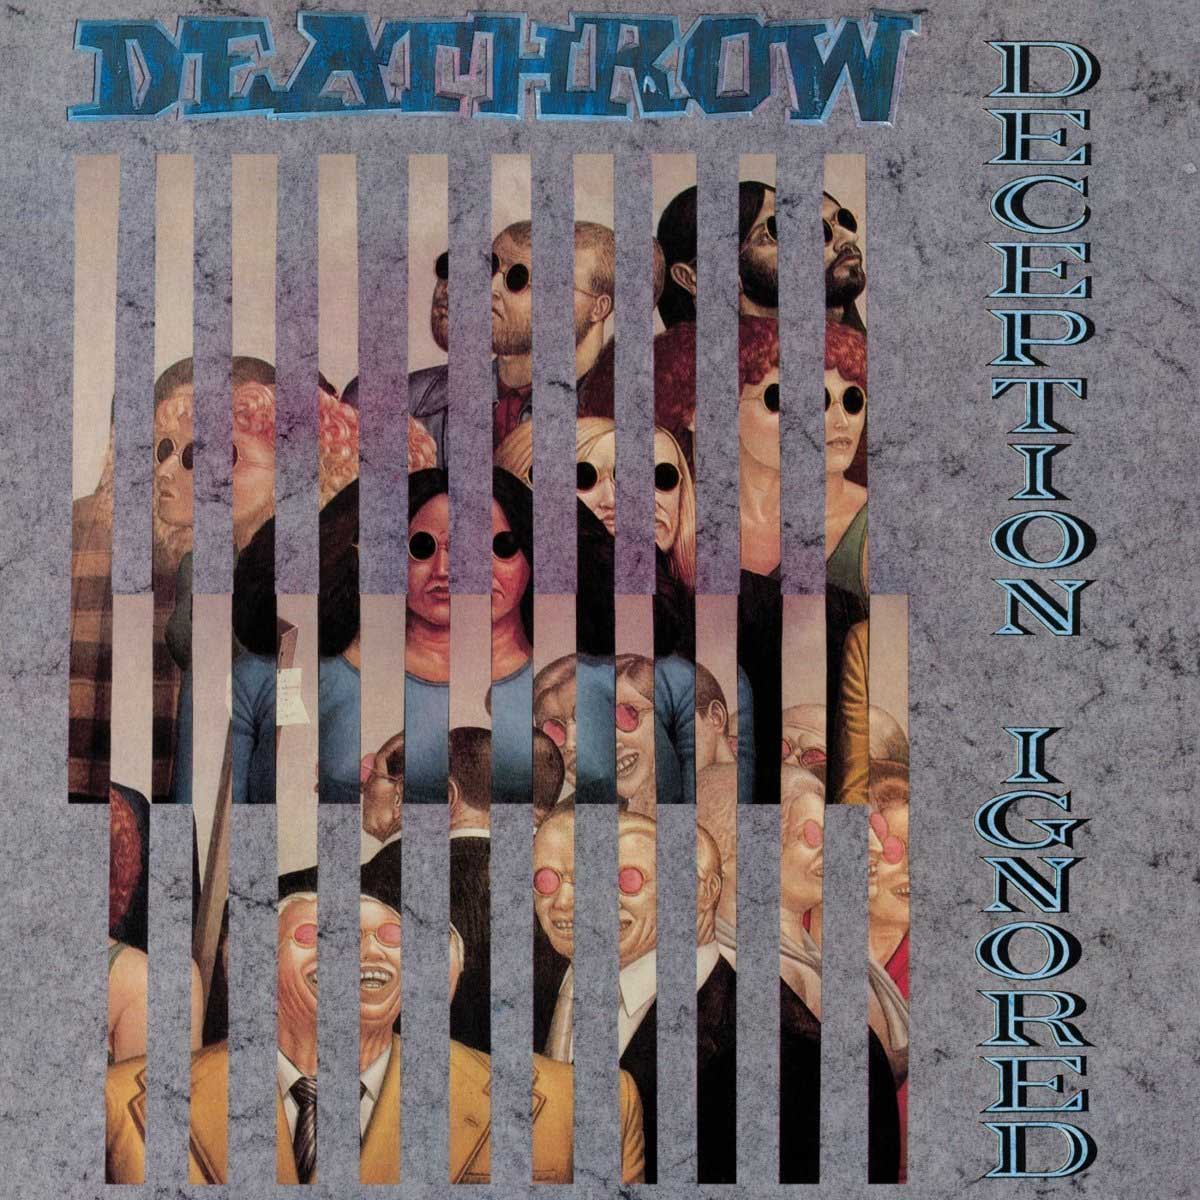 Deathrow "Deception Ignored" Silver Vinyl